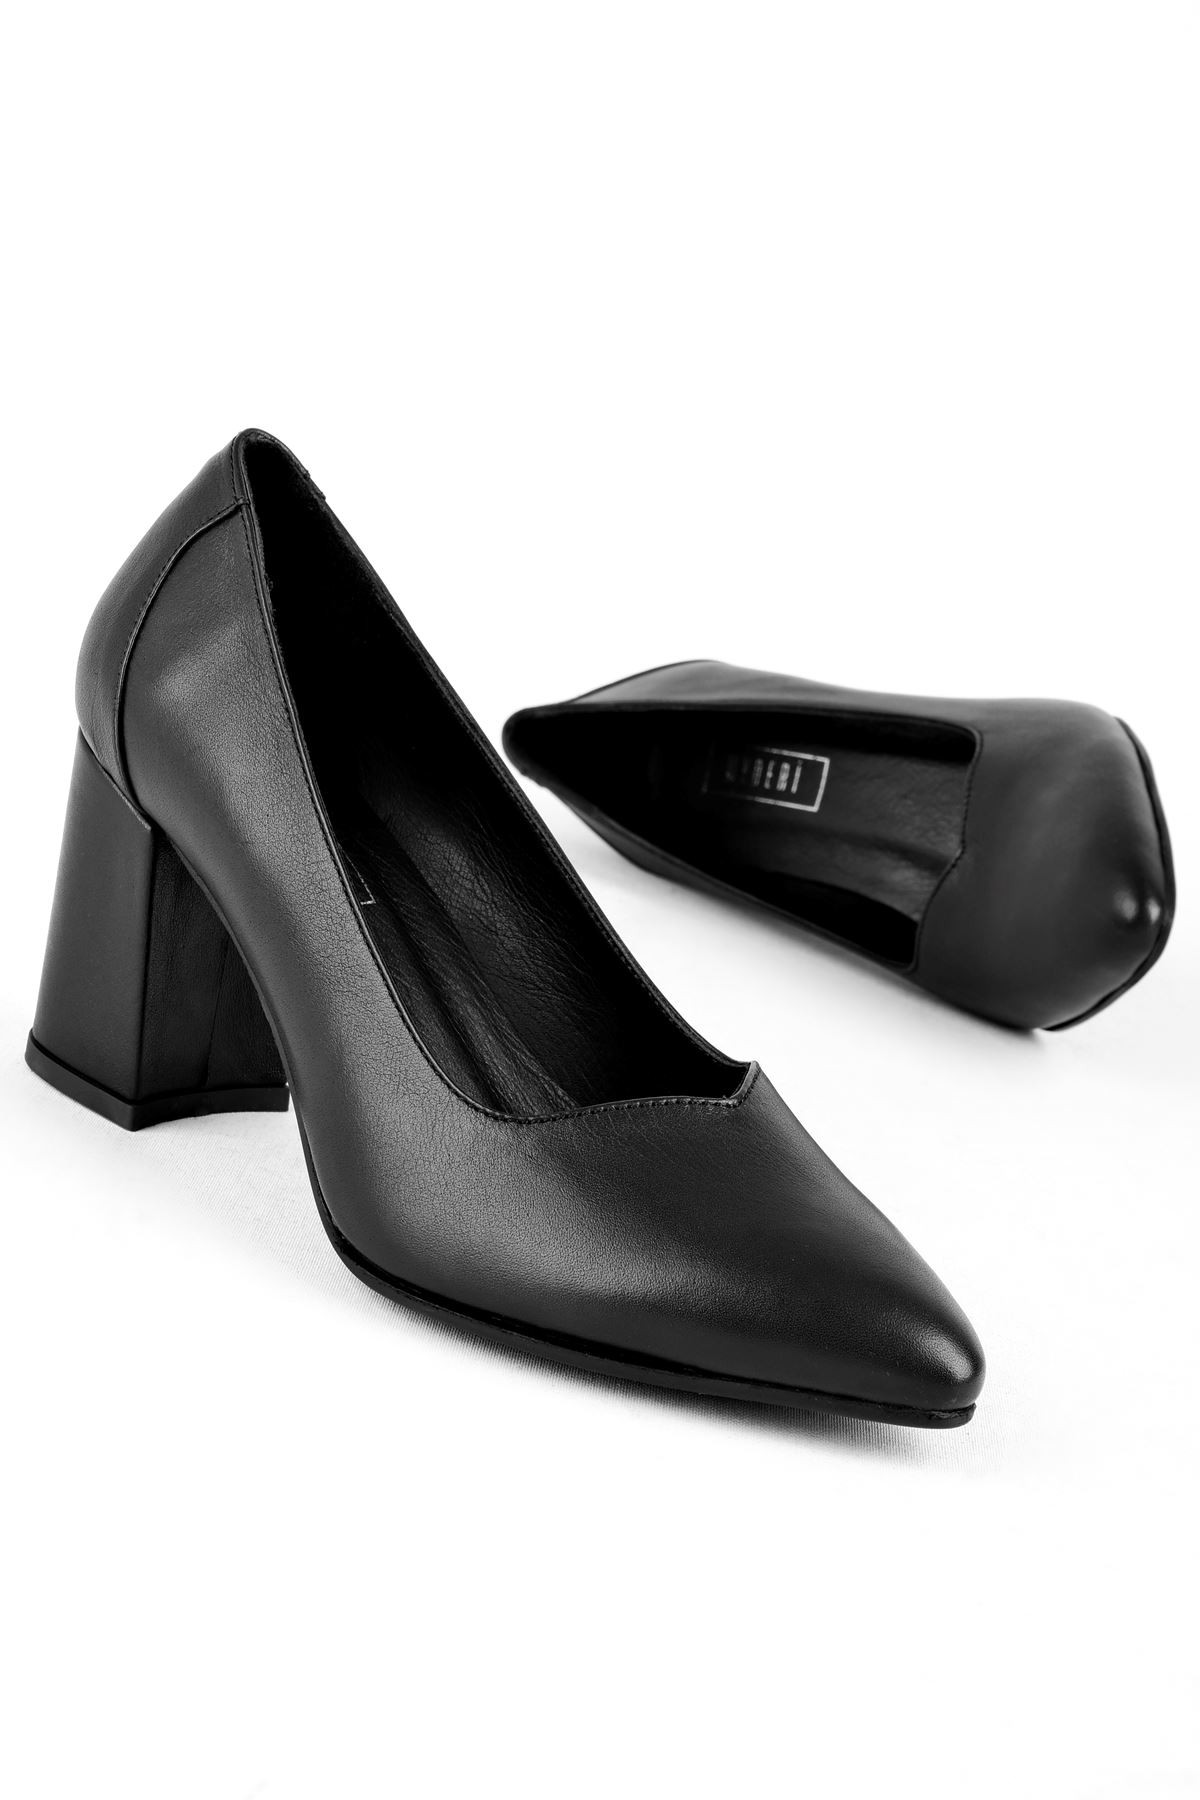 Nera Kadın Hakiki Deri Sivri Burun Topuklu Ayakkabı B3185 - Siyah